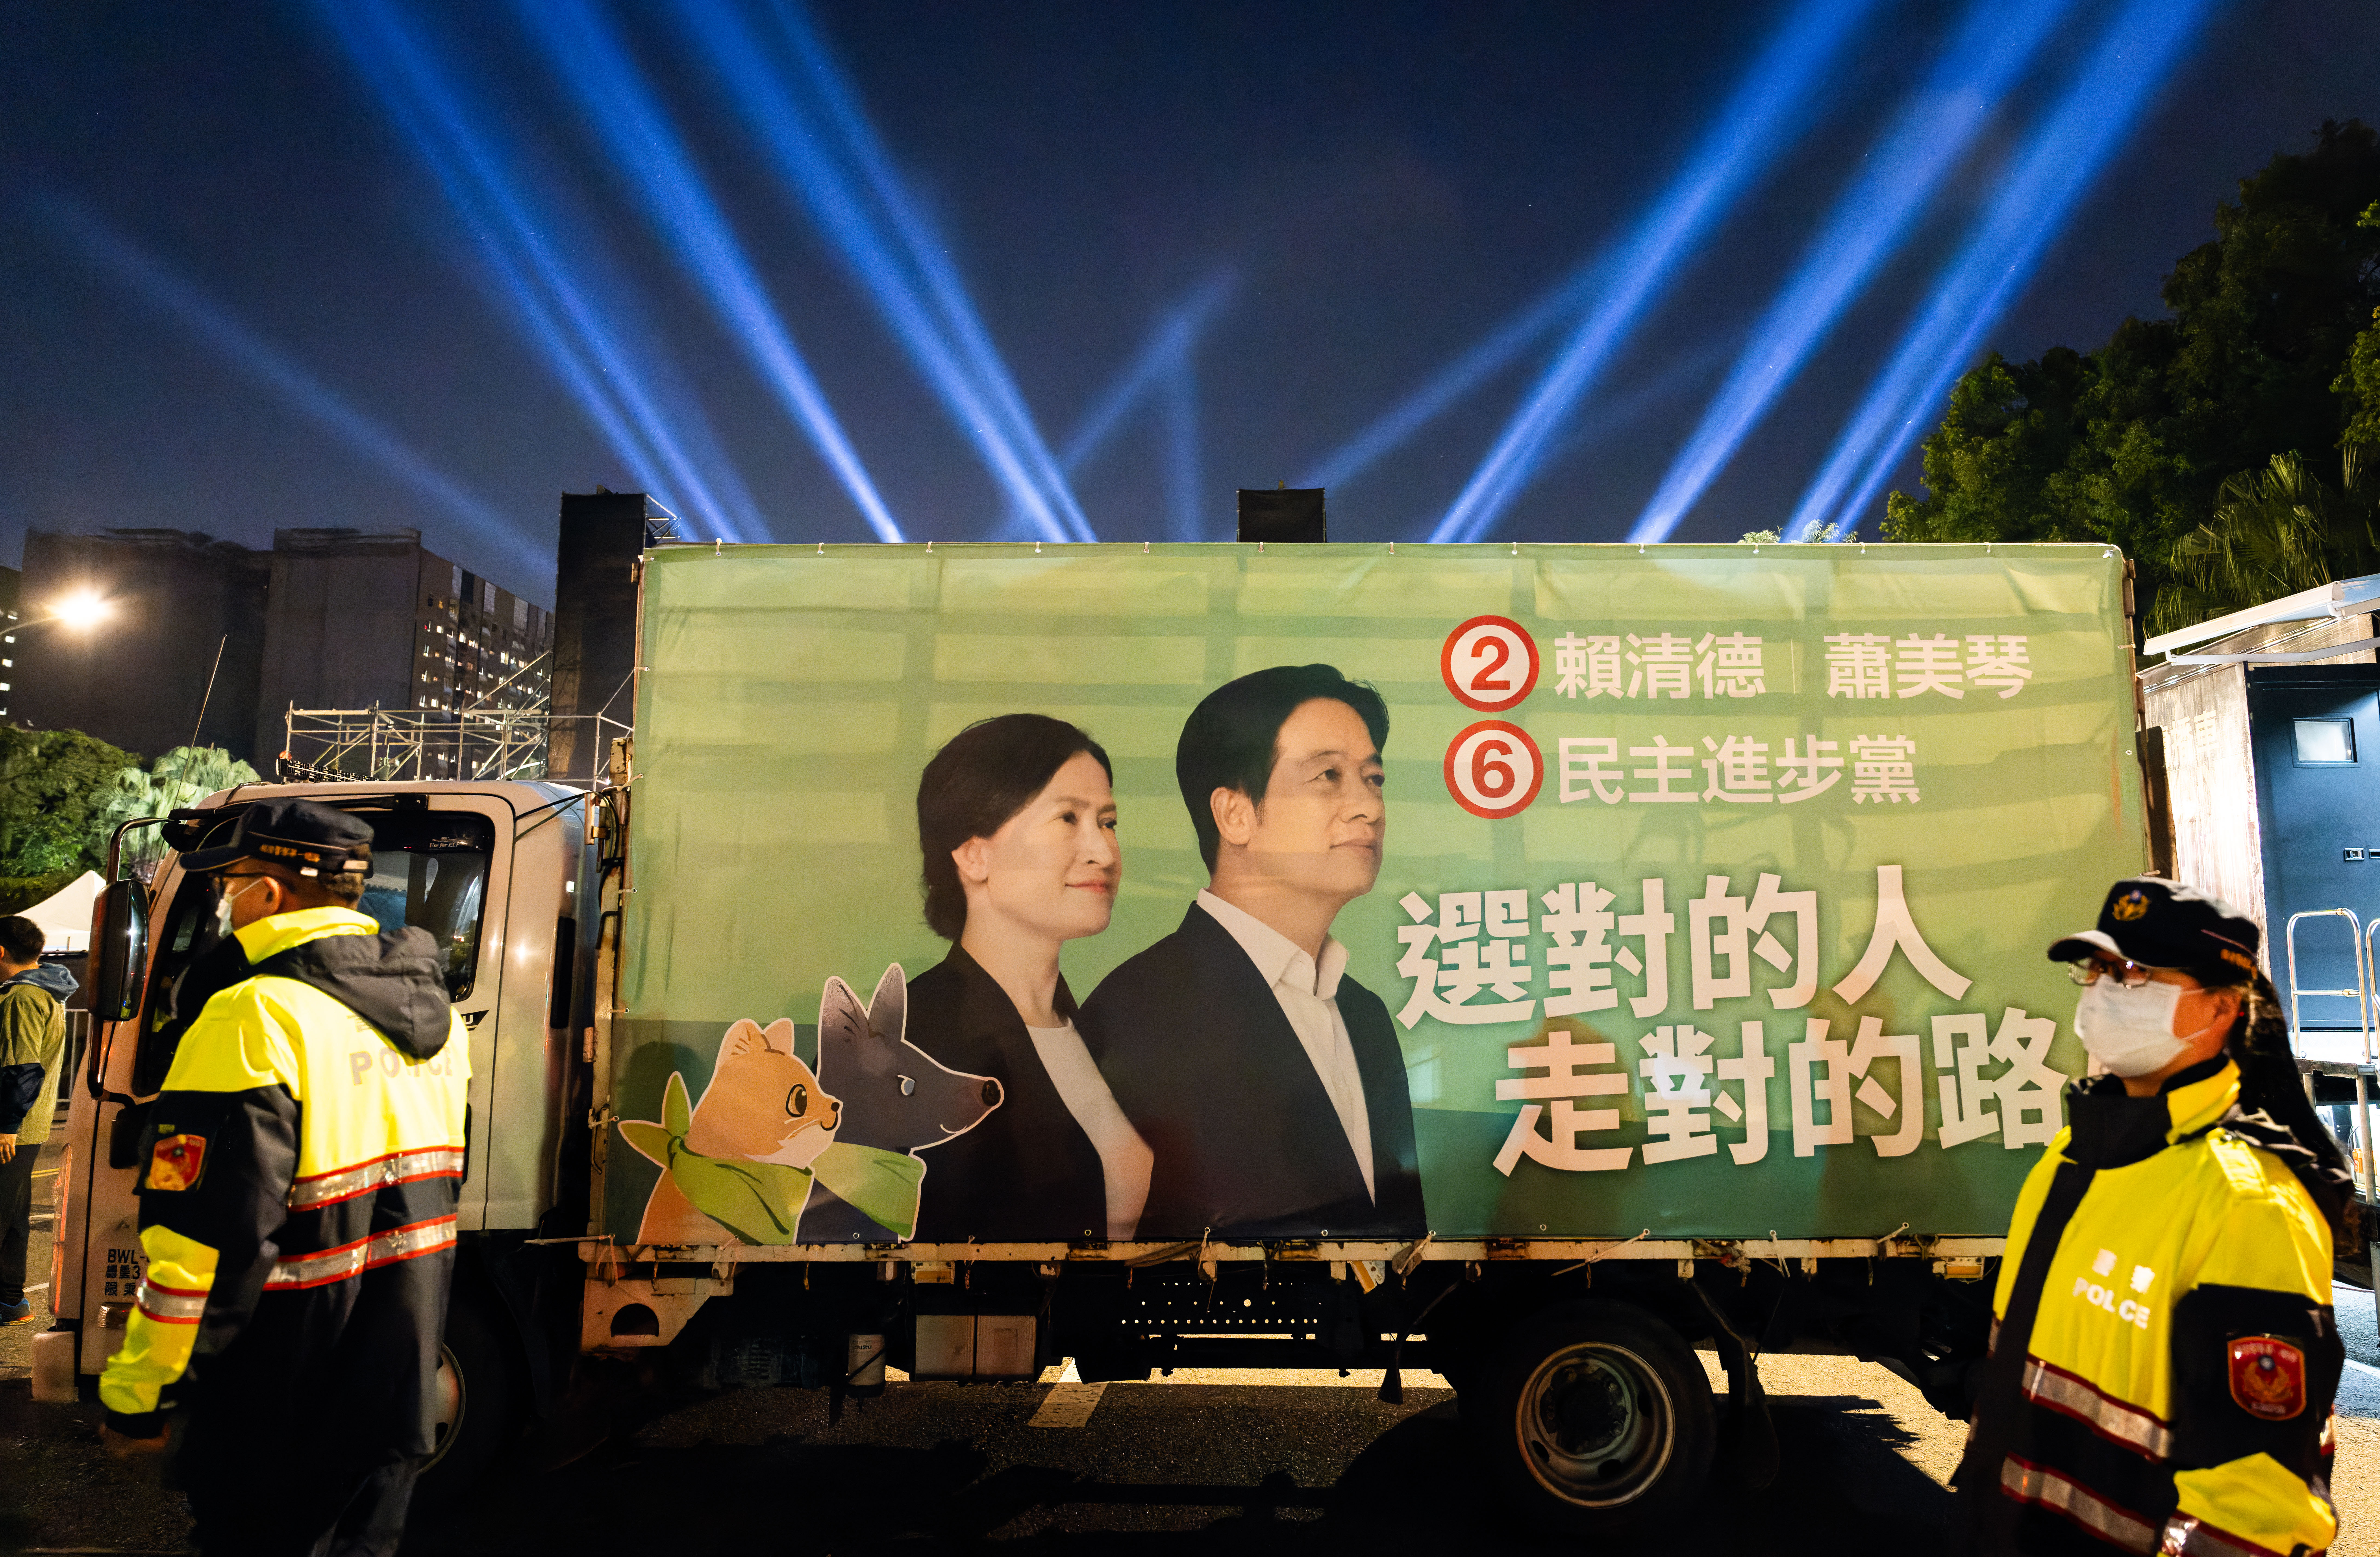 Face aux pressions de la Chine, Taïwan appelle à « respecter les résultats » de l'élection présidentielle